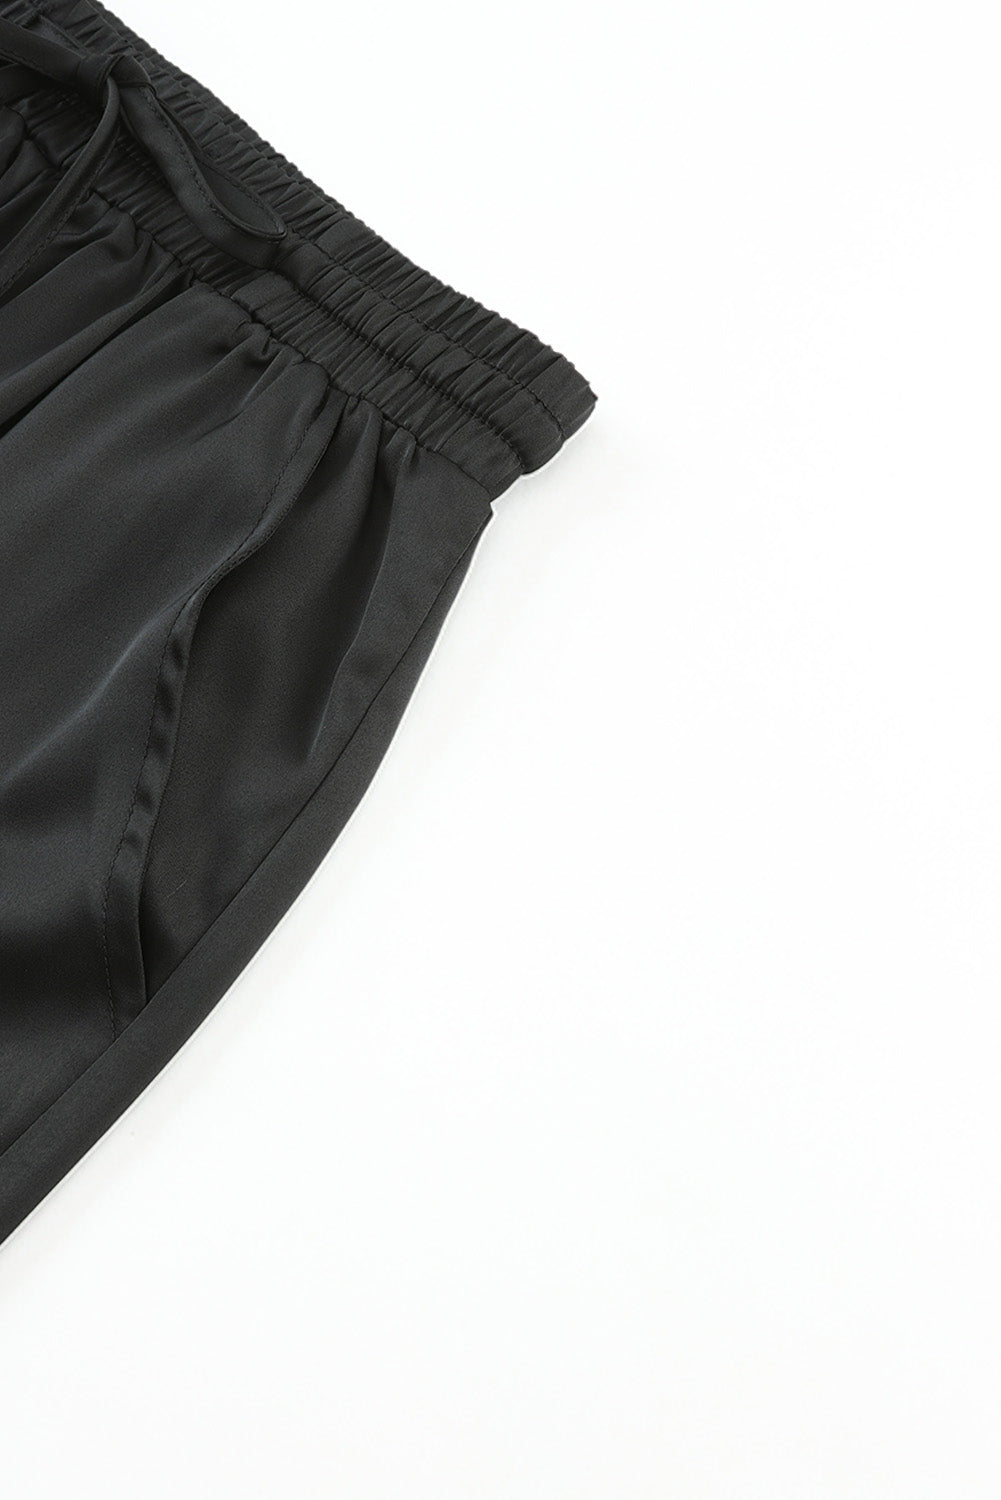 Pantalon noir en satin avec poches et cordon de serrage à taille élastique